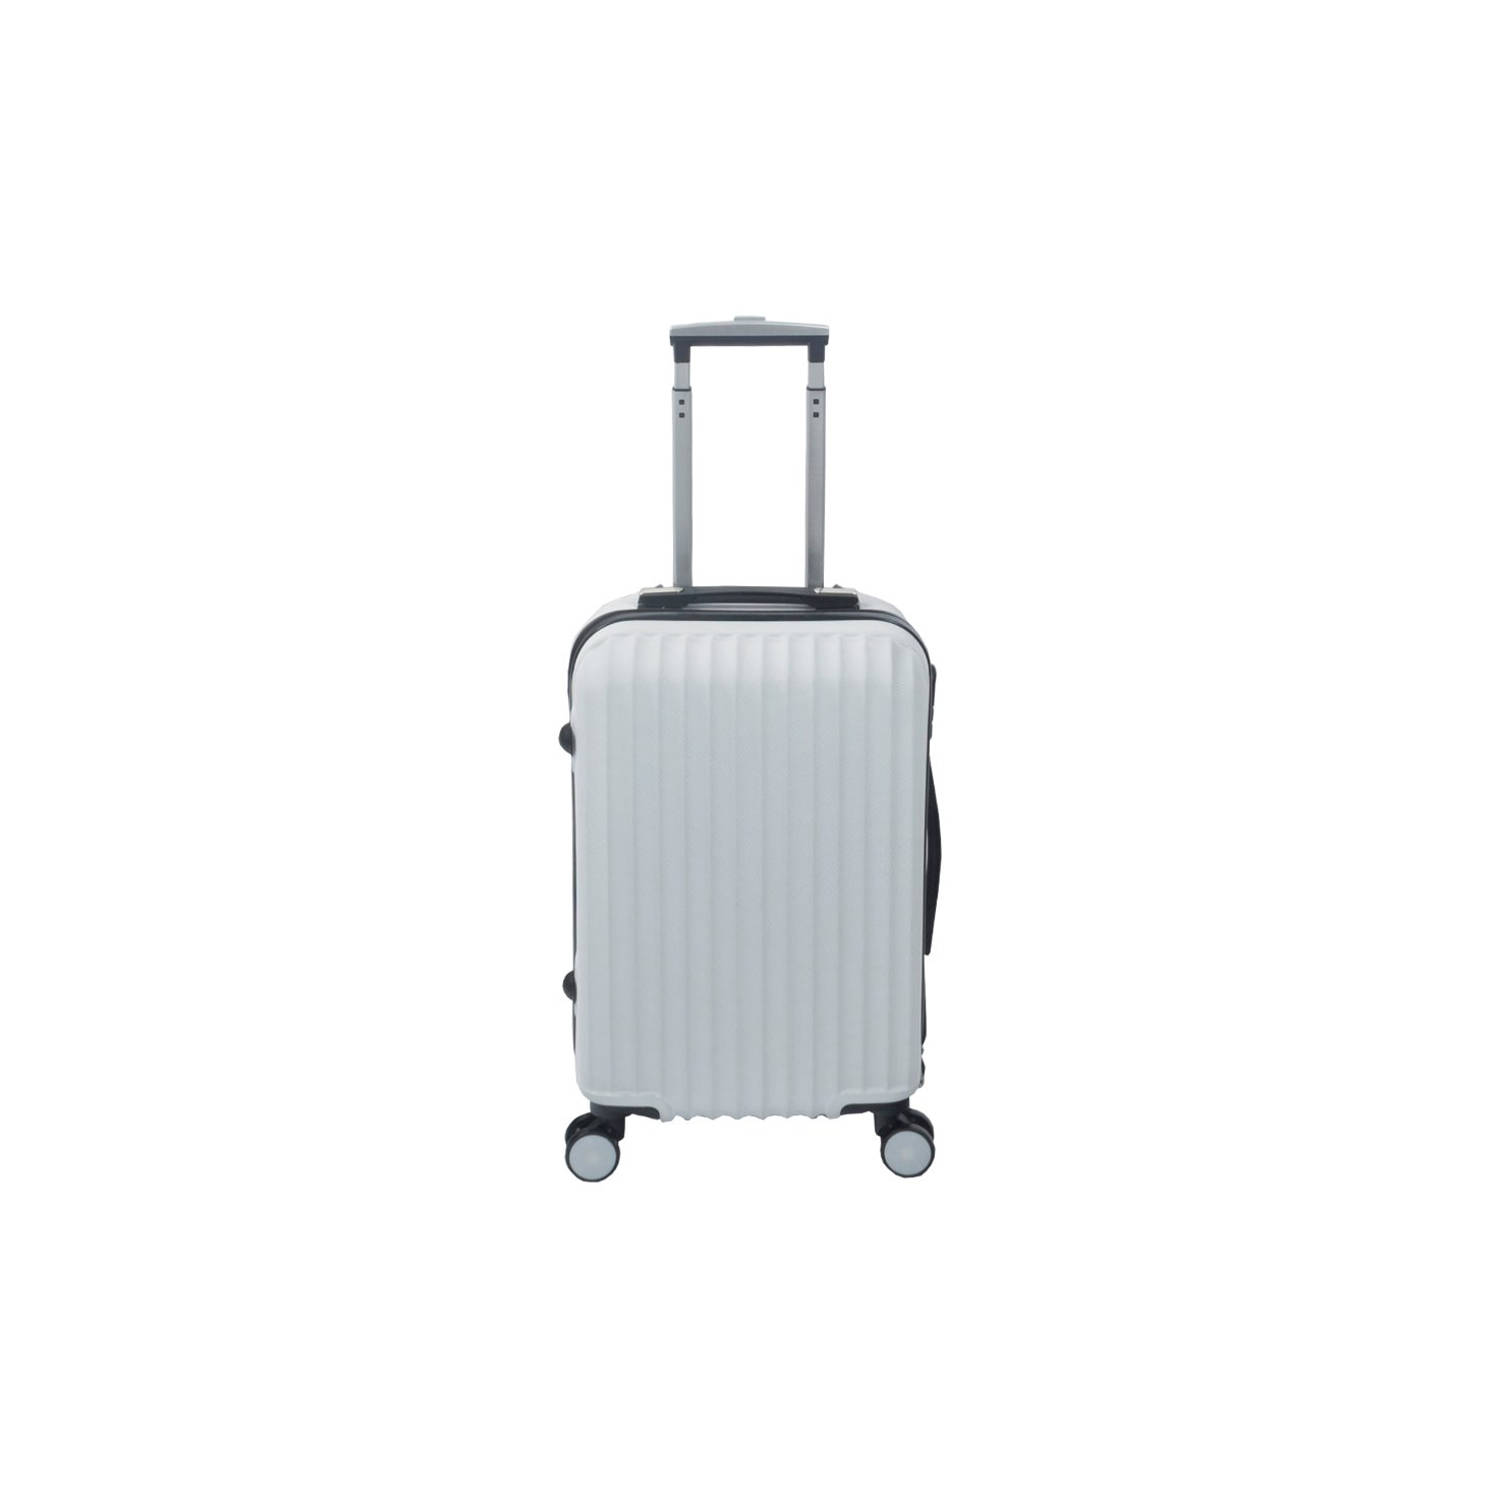 Handbagage koffer 55cm wit 4 wielen trolley met slot | Blokker